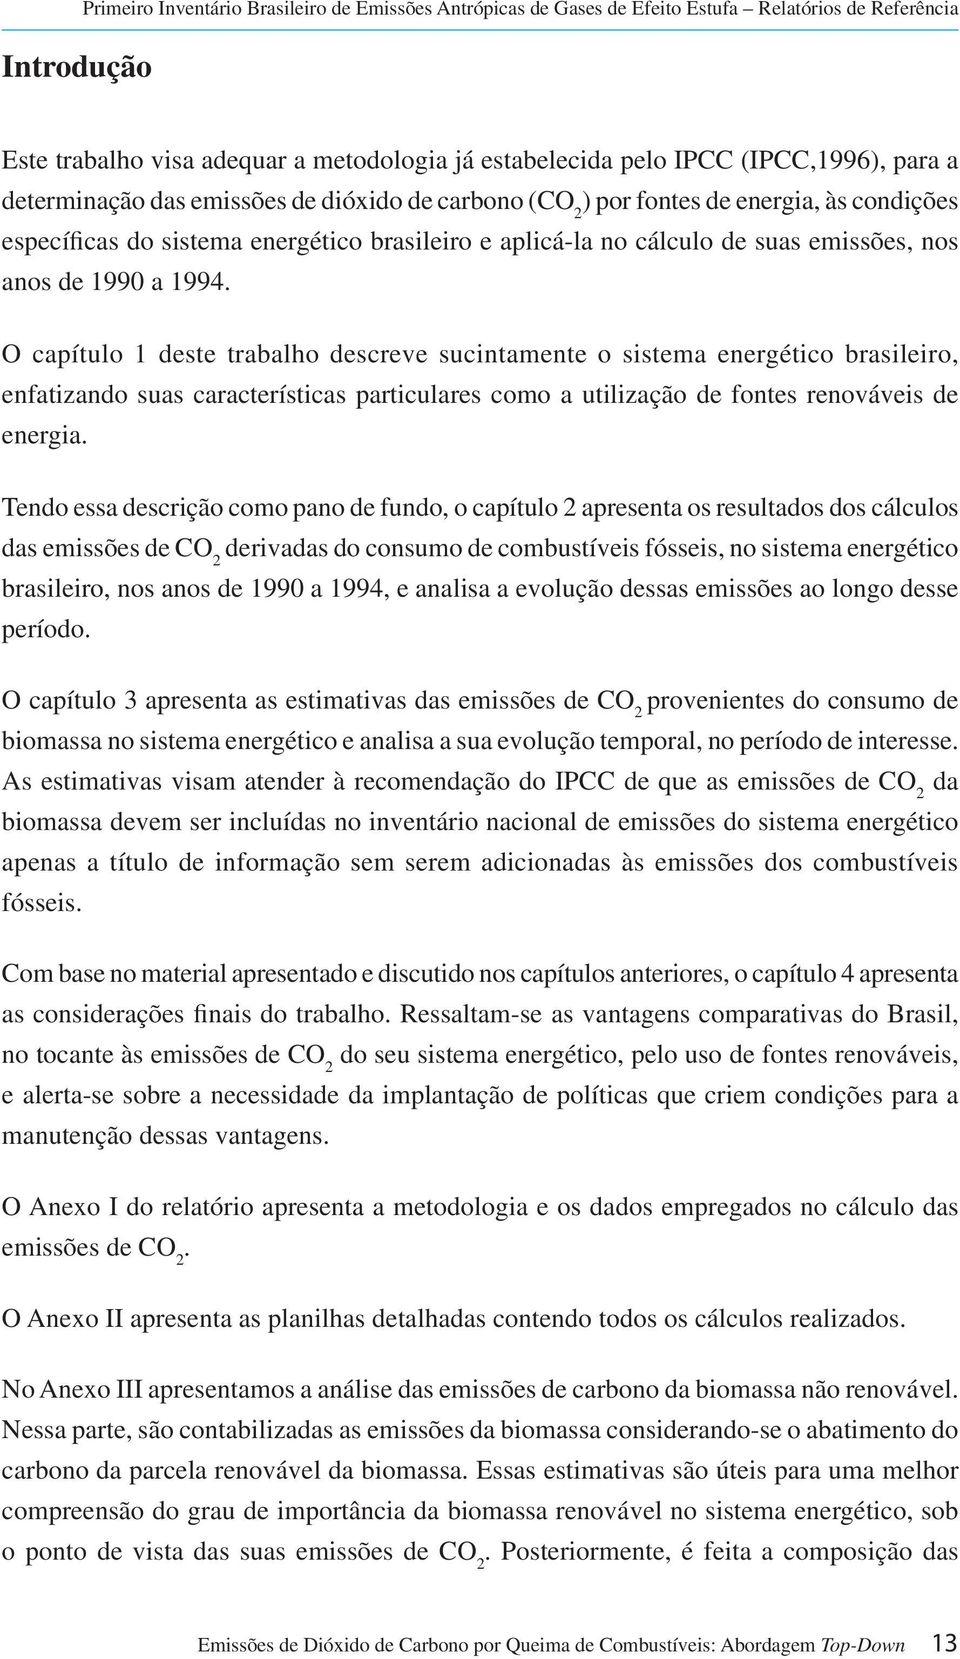 1990 a 1994. O capítulo 1 deste trabalho descreve sucintamente o sistema energético brasileiro, enfatizando suas características particulares como a utilização de fontes renováveis de energia.